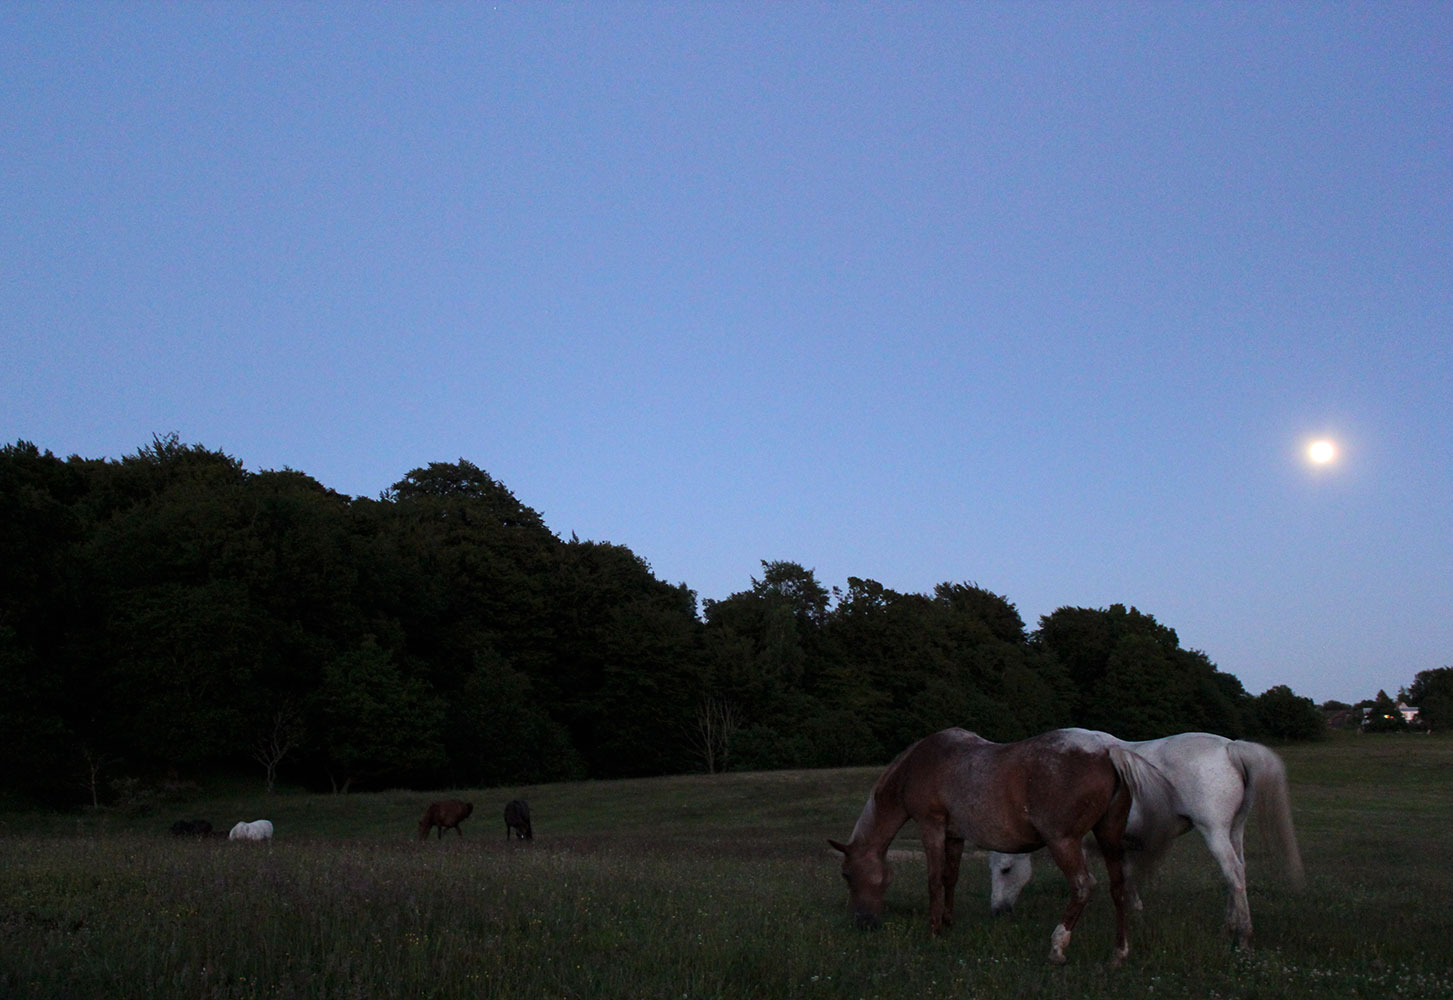 Horses evening